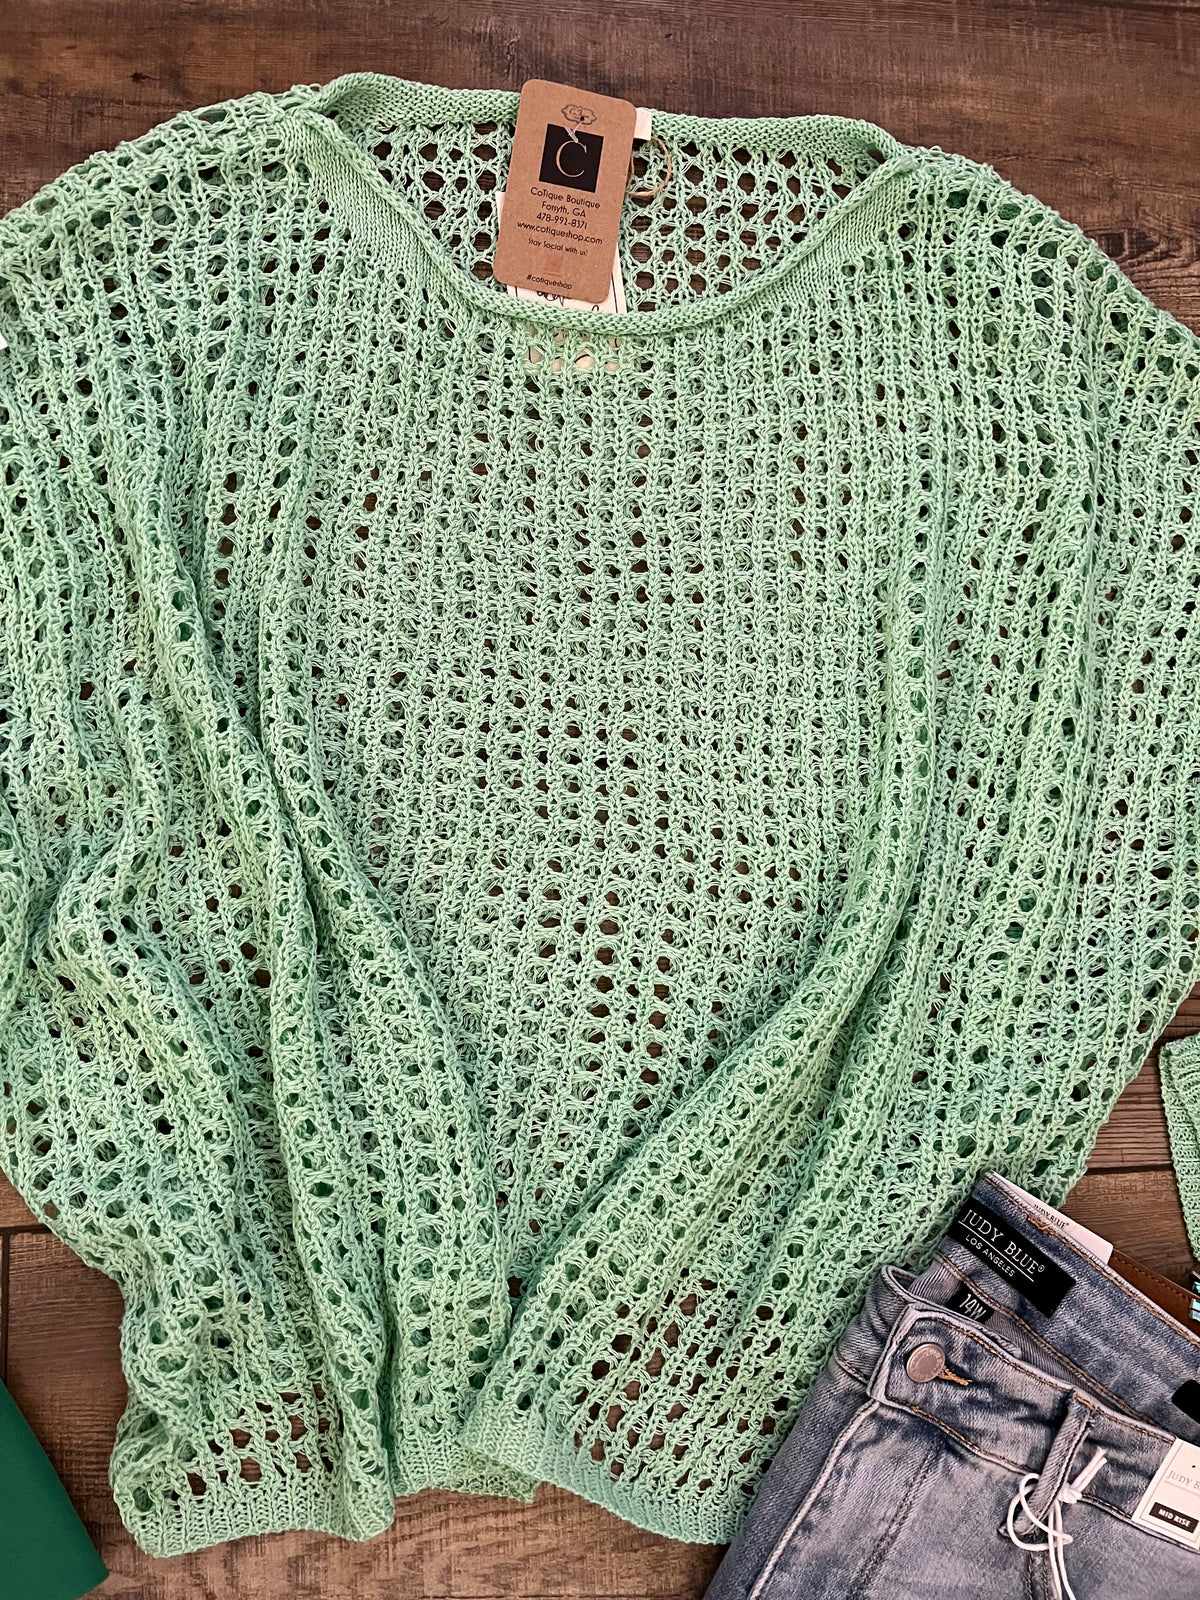 Knit Mint Sweater